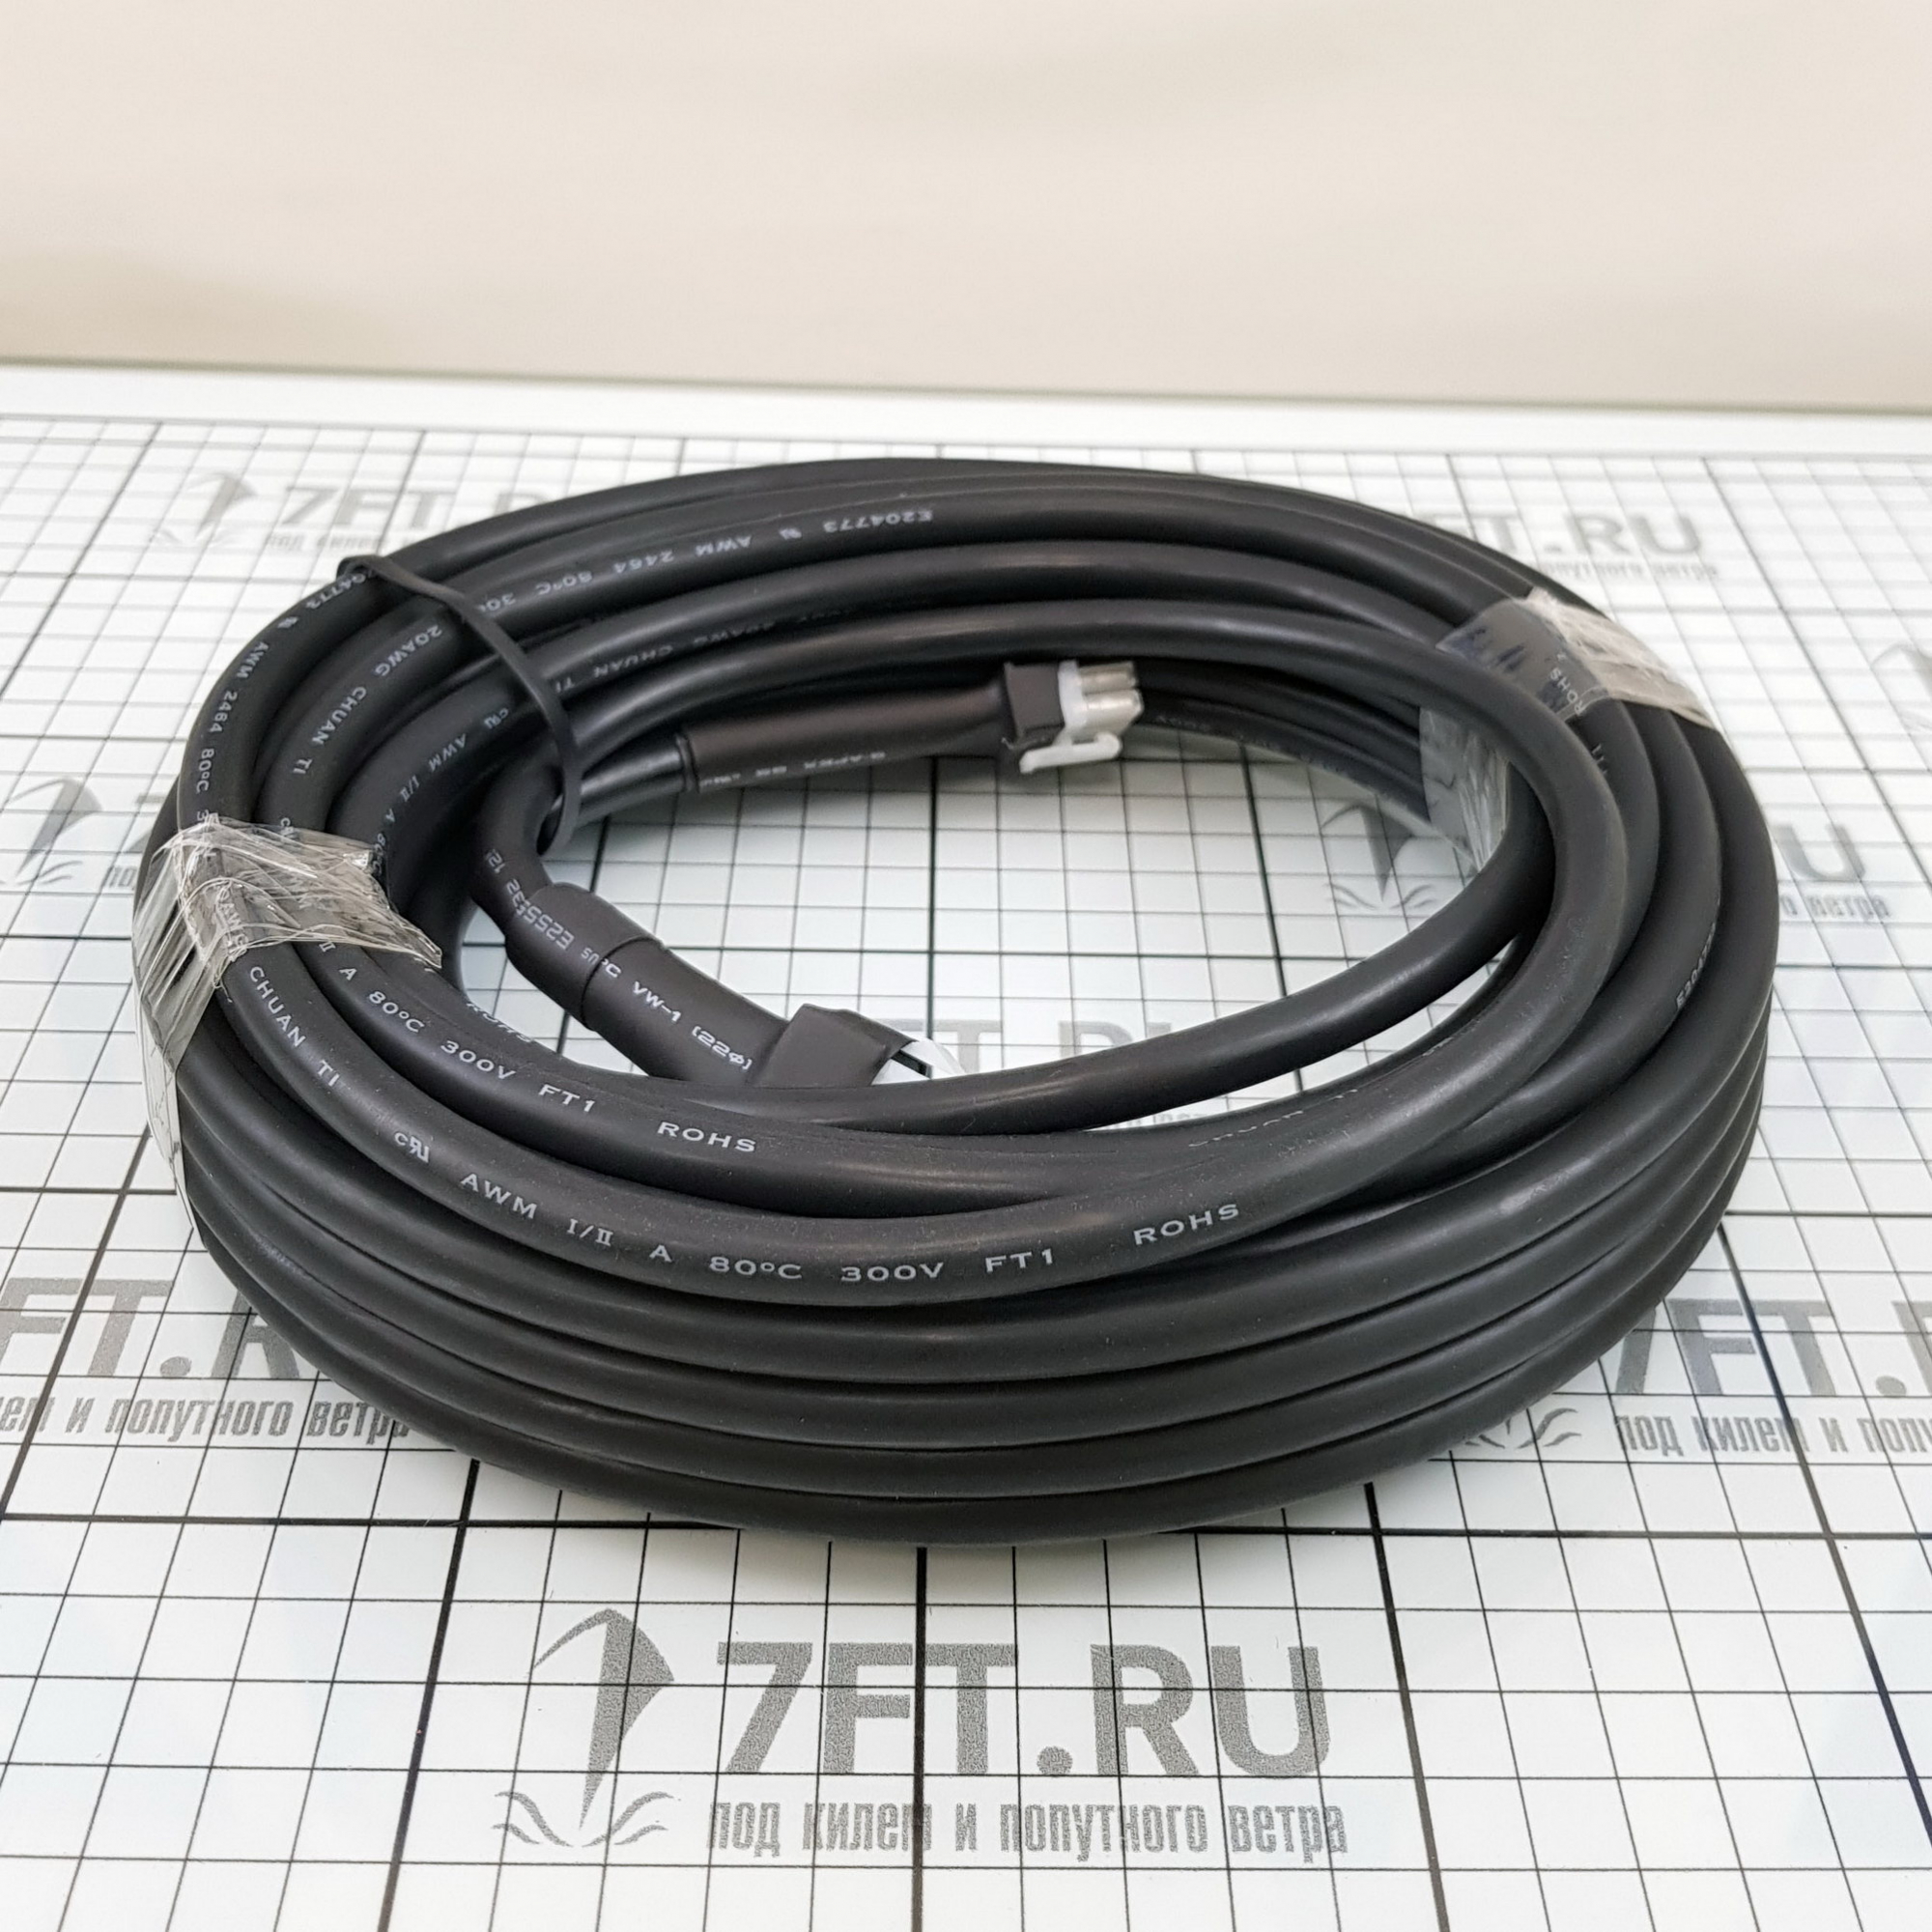 Купить Соединительный кабель с разъёмами Lewmar Gen 2 AUX MX 589803 10м для использования с одиночными/двойными панелями управления 7ft.ru в интернет магазине Семь Футов